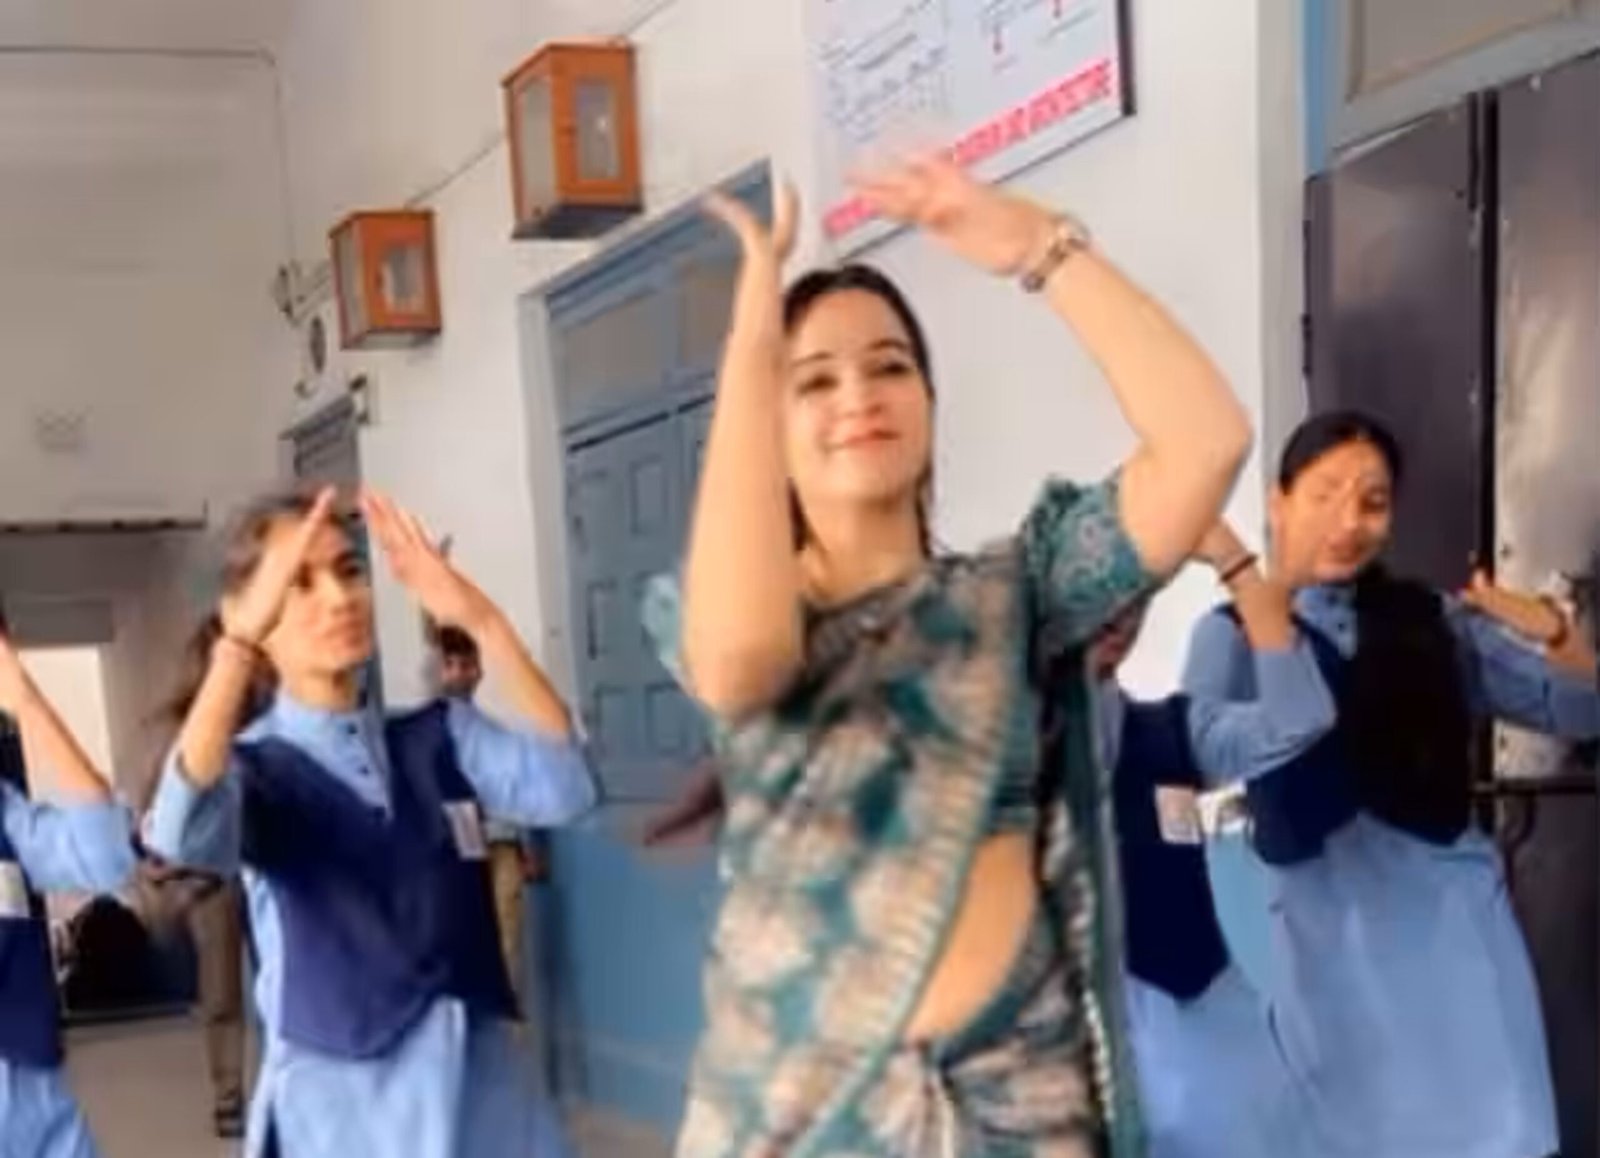 Teacher Dance Video Viral - पहाड़ी गाने पर स्कूल टीचर ने किया बवाल डांस, वीडियो हुआ वायरल,